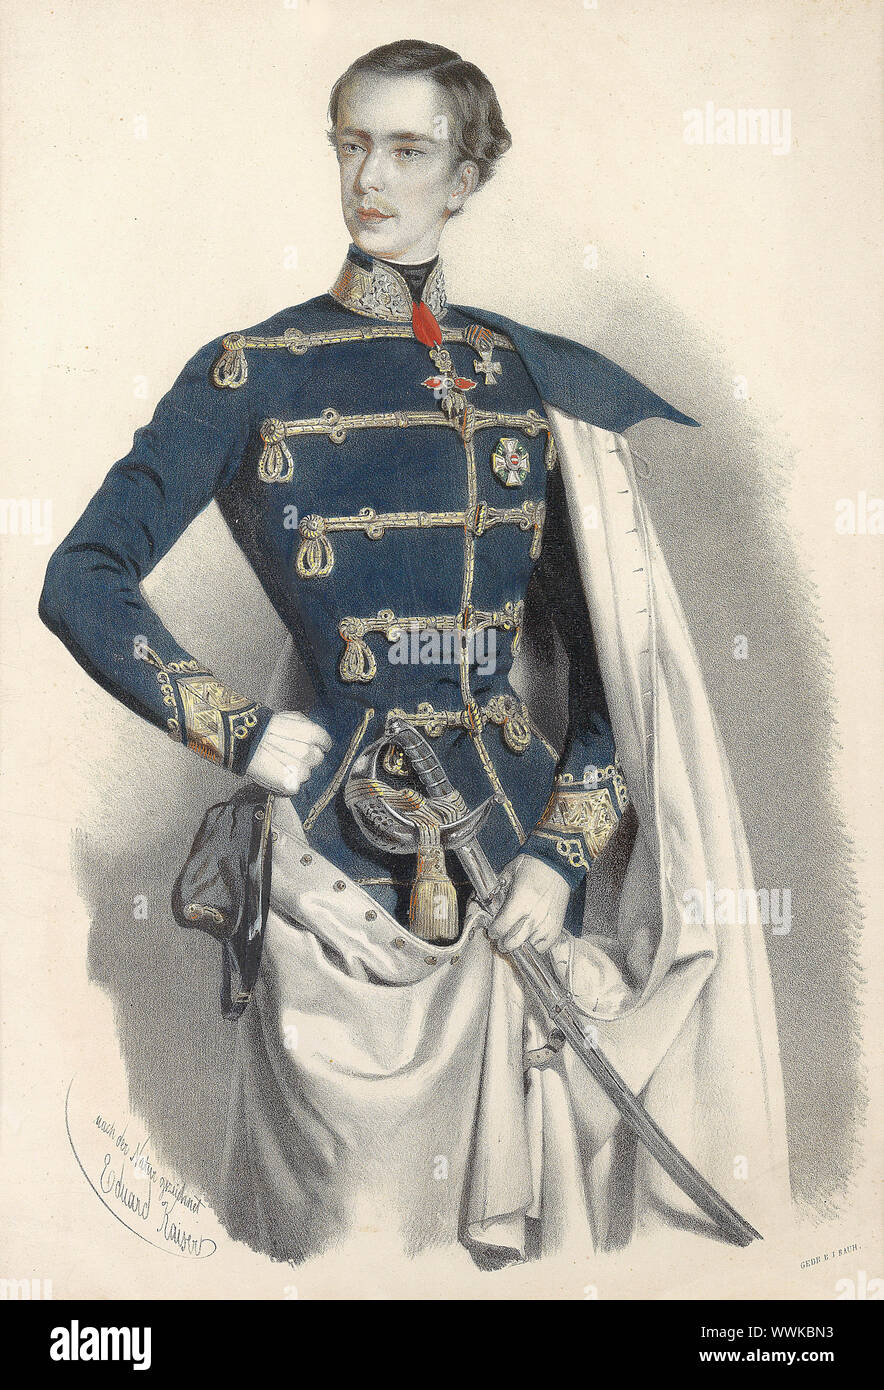 Portrait of Emperor Franz Joseph I of Austria, in Hungarian uniform, c. 1850. Private Collection. Stock Photo